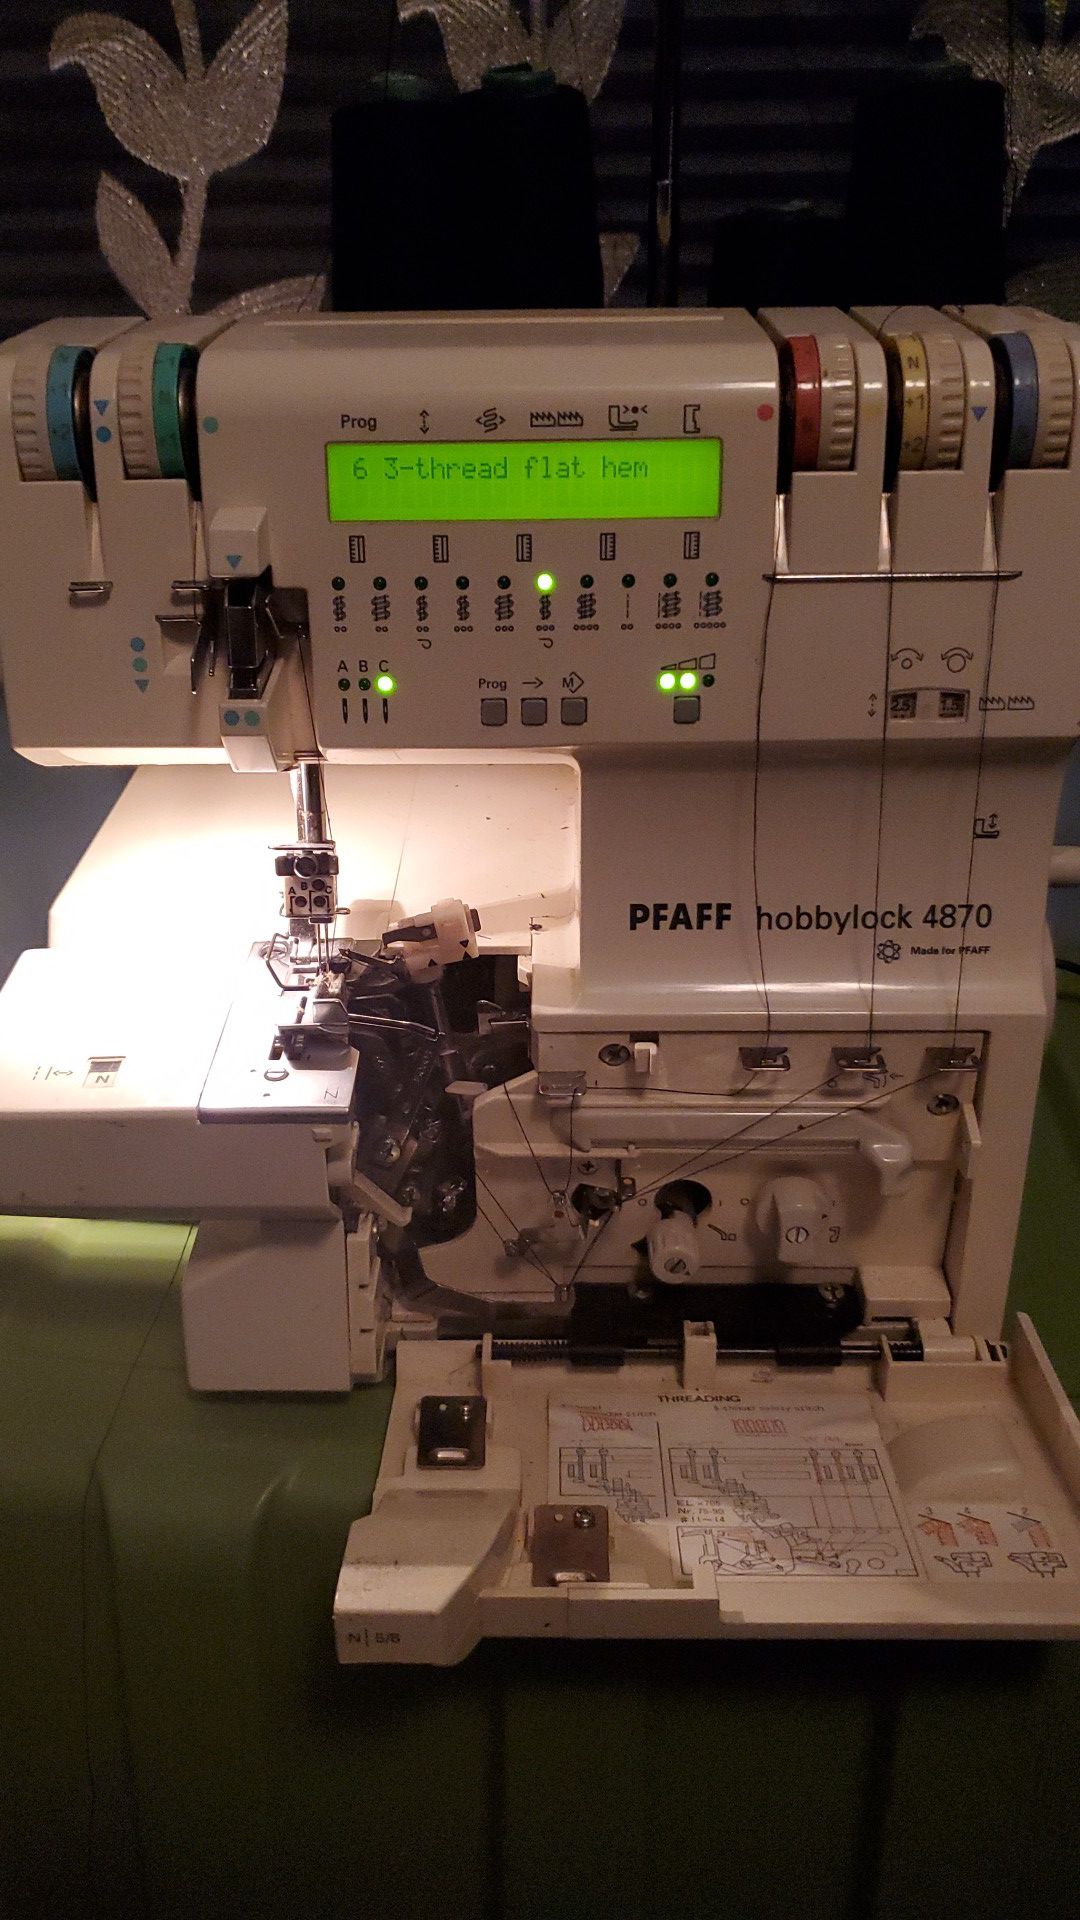 Overclock sewing machine